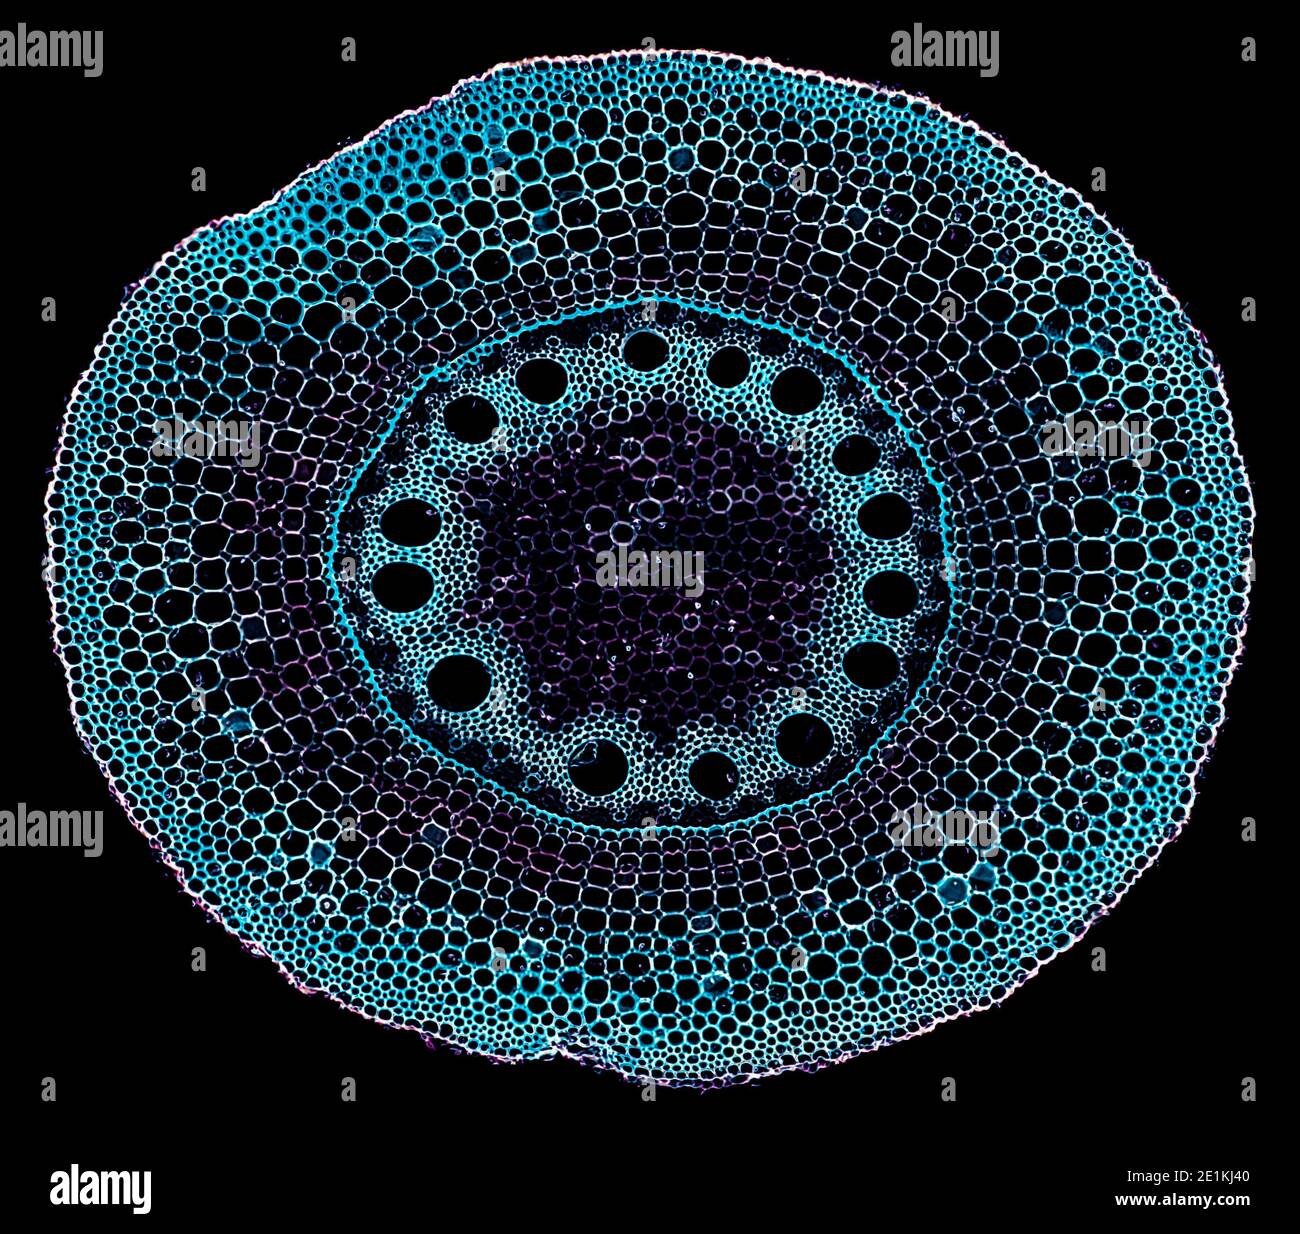 corte de sección transversal bajo el microscopio – vista microscópica de células  vegetales para la educación botánica Fotografía de stock - Alamy